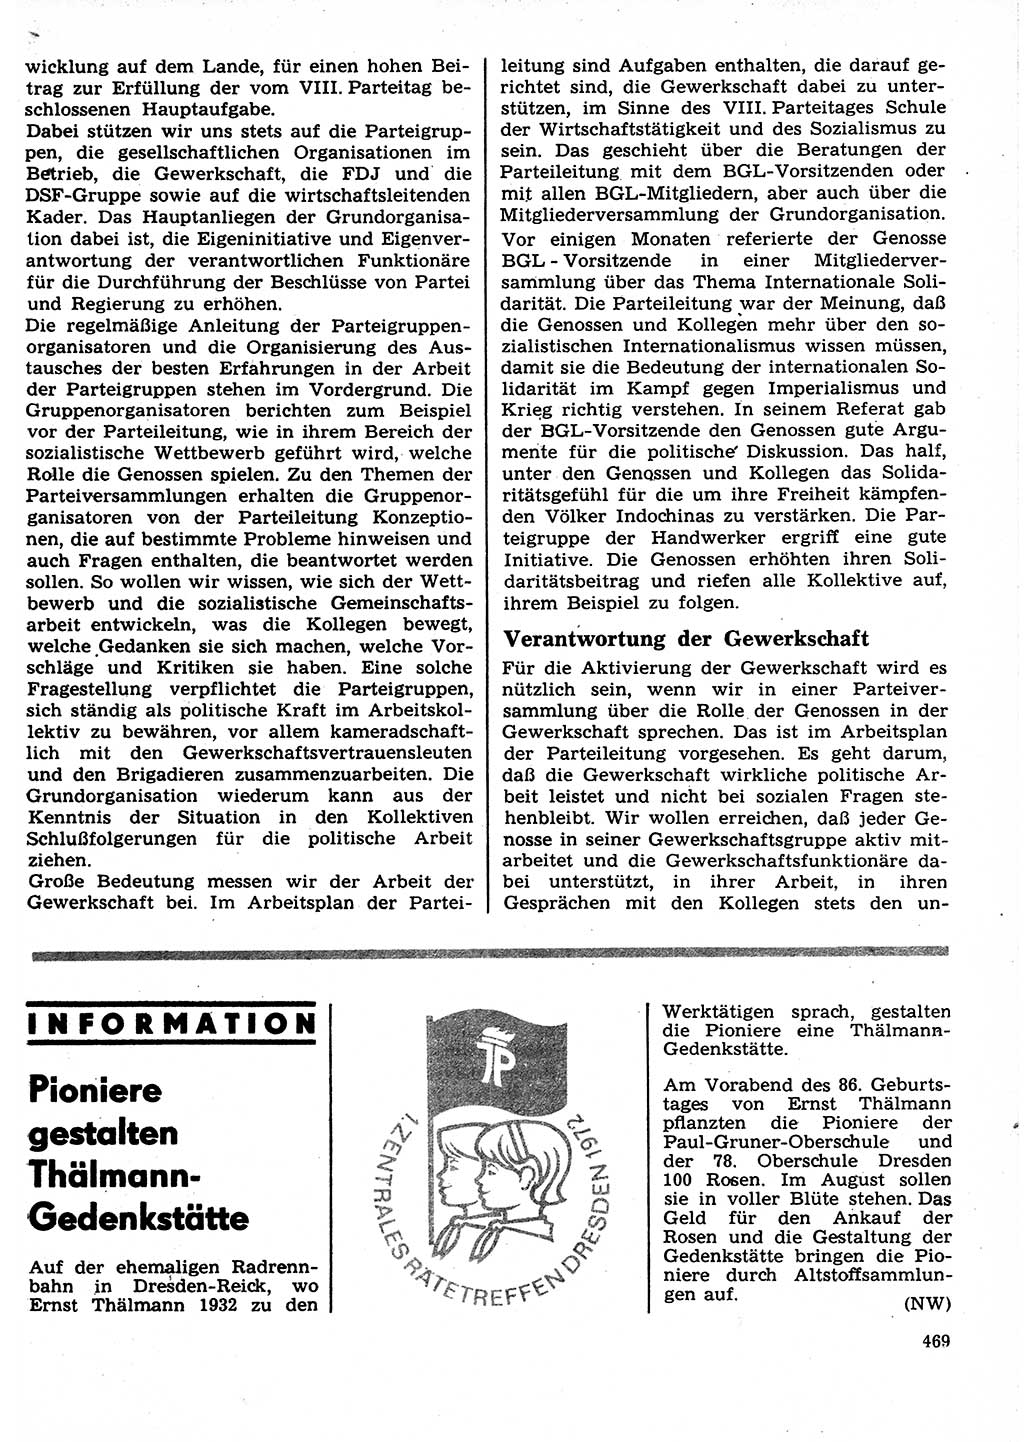 Neuer Weg (NW), Organ des Zentralkomitees (ZK) der SED (Sozialistische Einheitspartei Deutschlands) für Fragen des Parteilebens, 27. Jahrgang [Deutsche Demokratische Republik (DDR)] 1972, Seite 469 (NW ZK SED DDR 1972, S. 469)